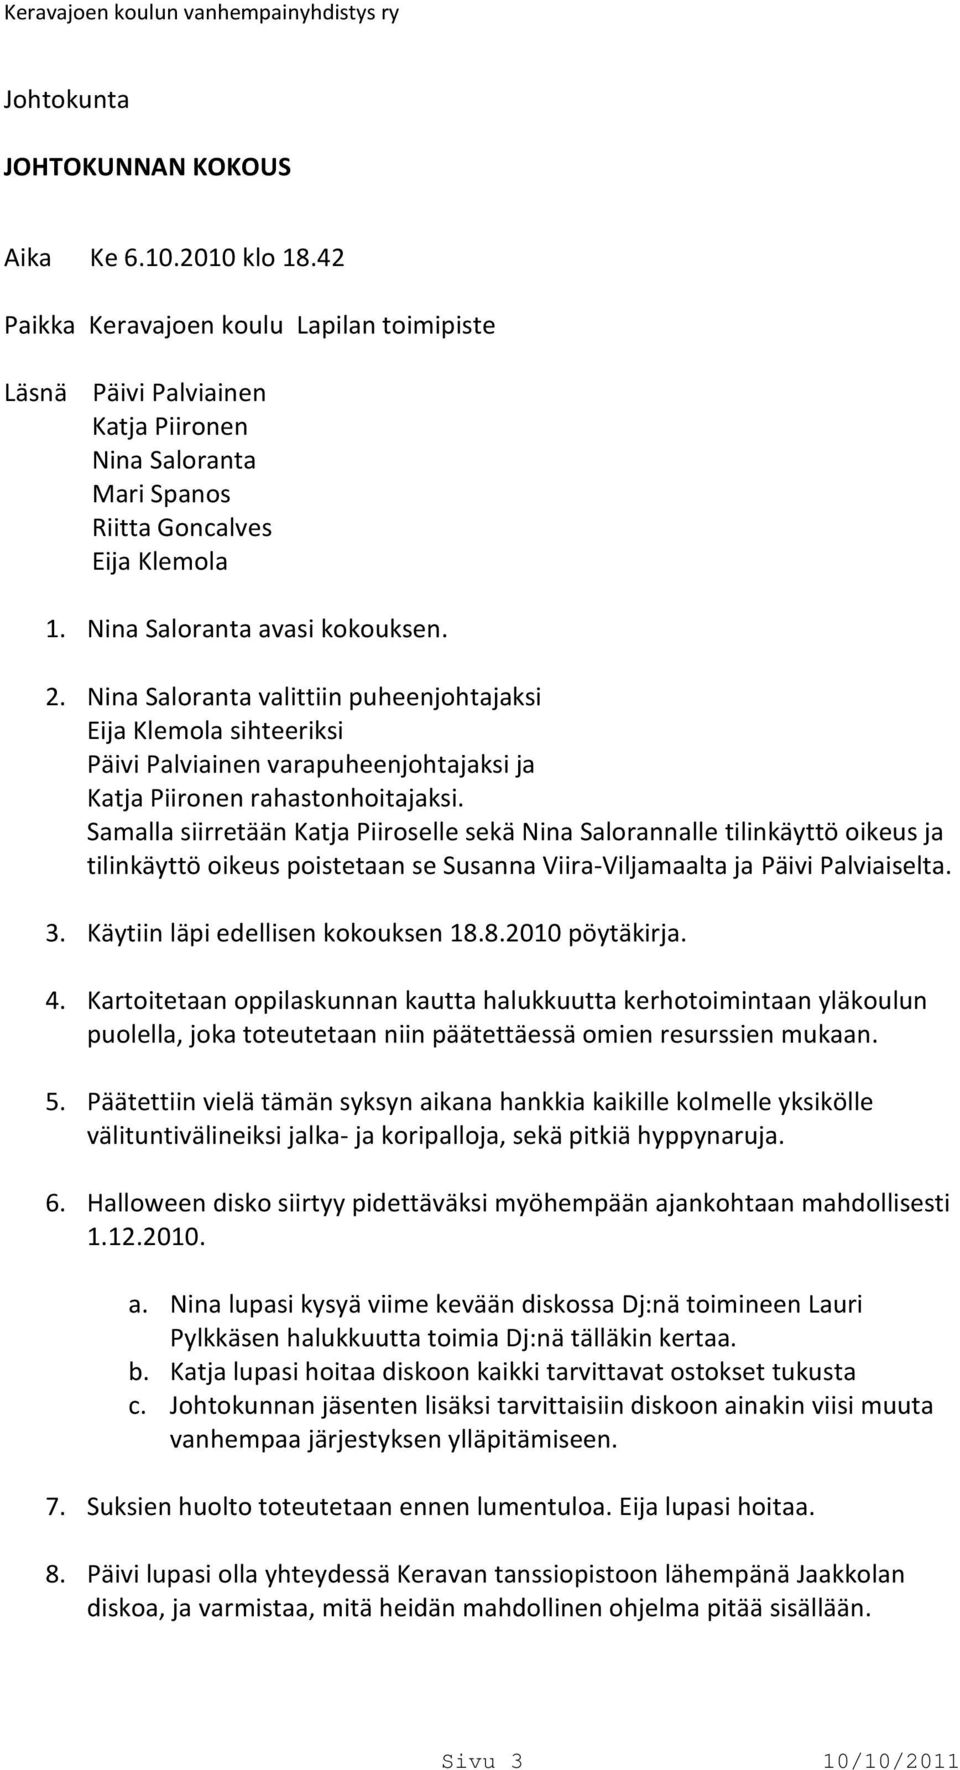 Samalla siirretään Katja Piiroselle sekä Nina Salorannalle tilinkäyttö oikeus ja tilinkäyttö oikeus poistetaan se Susanna Viira-Viljamaalta ja Päivi Palviaiselta. 3.